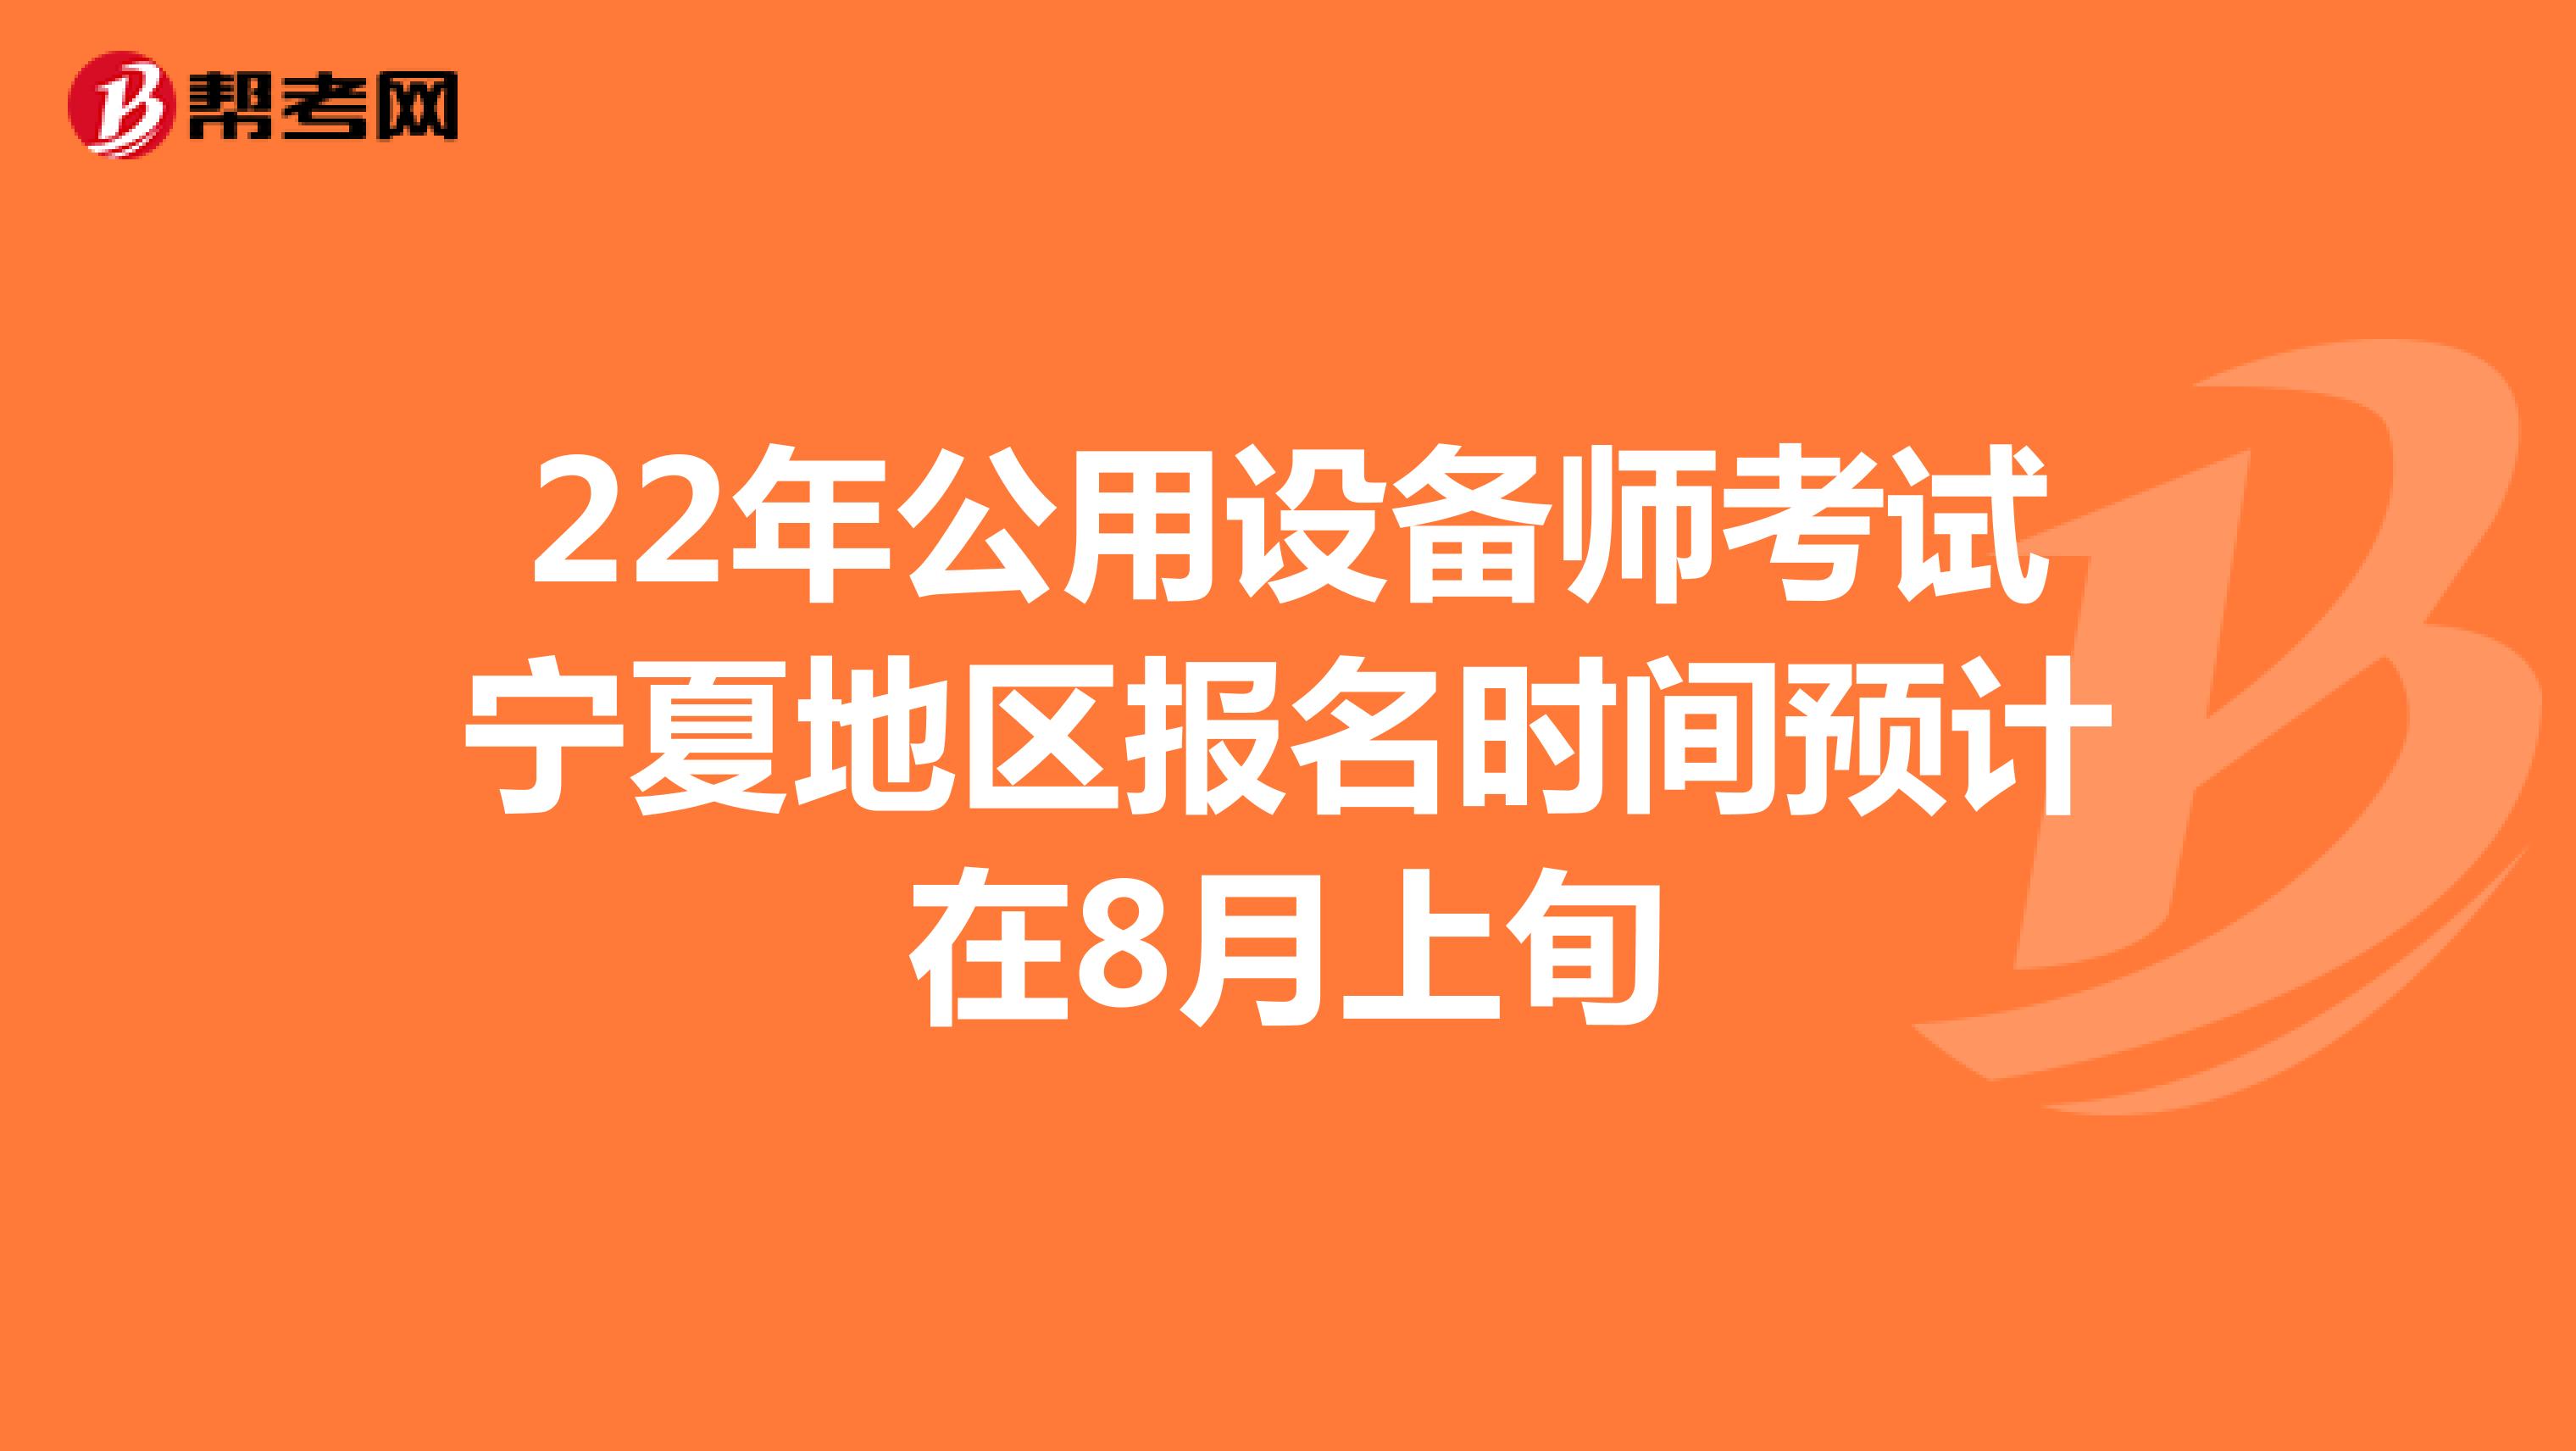 22年公用设备师考试宁夏地区报名时间预计在8月上旬